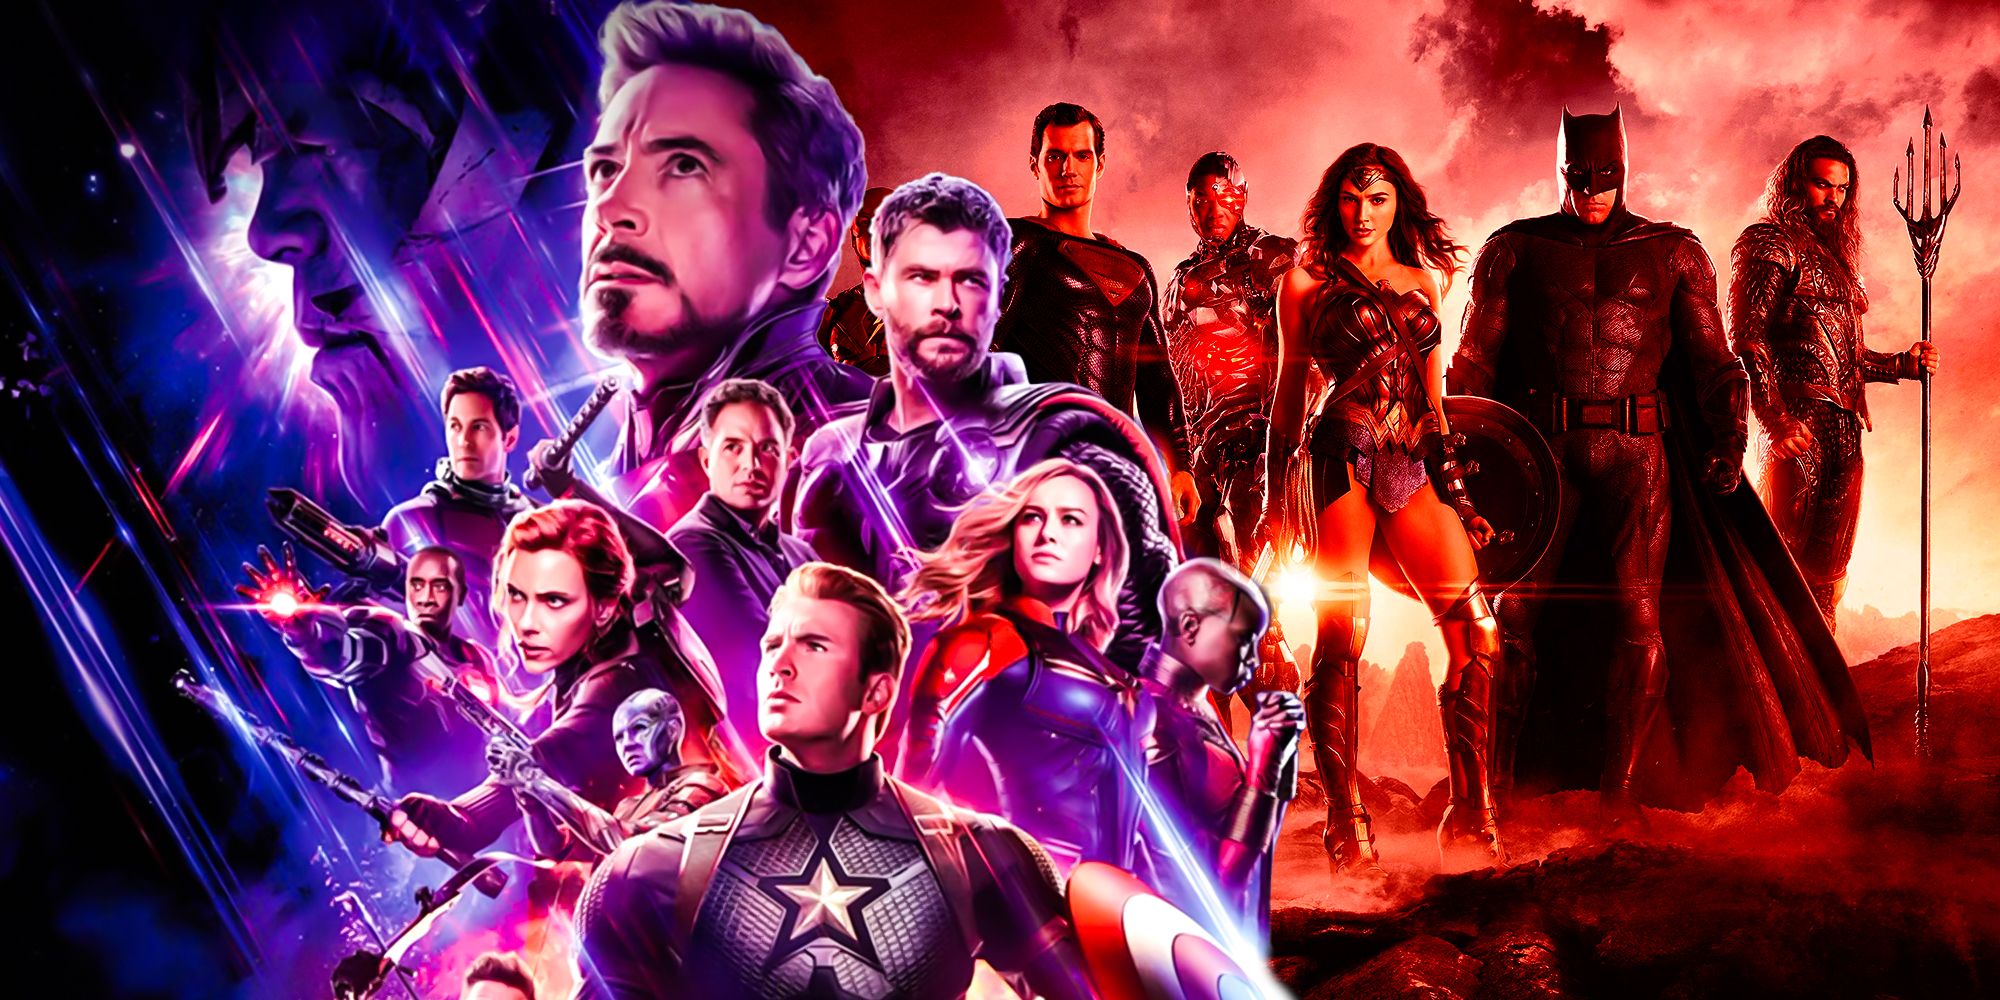 Esta próxima película de superhéroes que no pertenece a Marvel/DC es exactamente lo que el género necesita en este momento